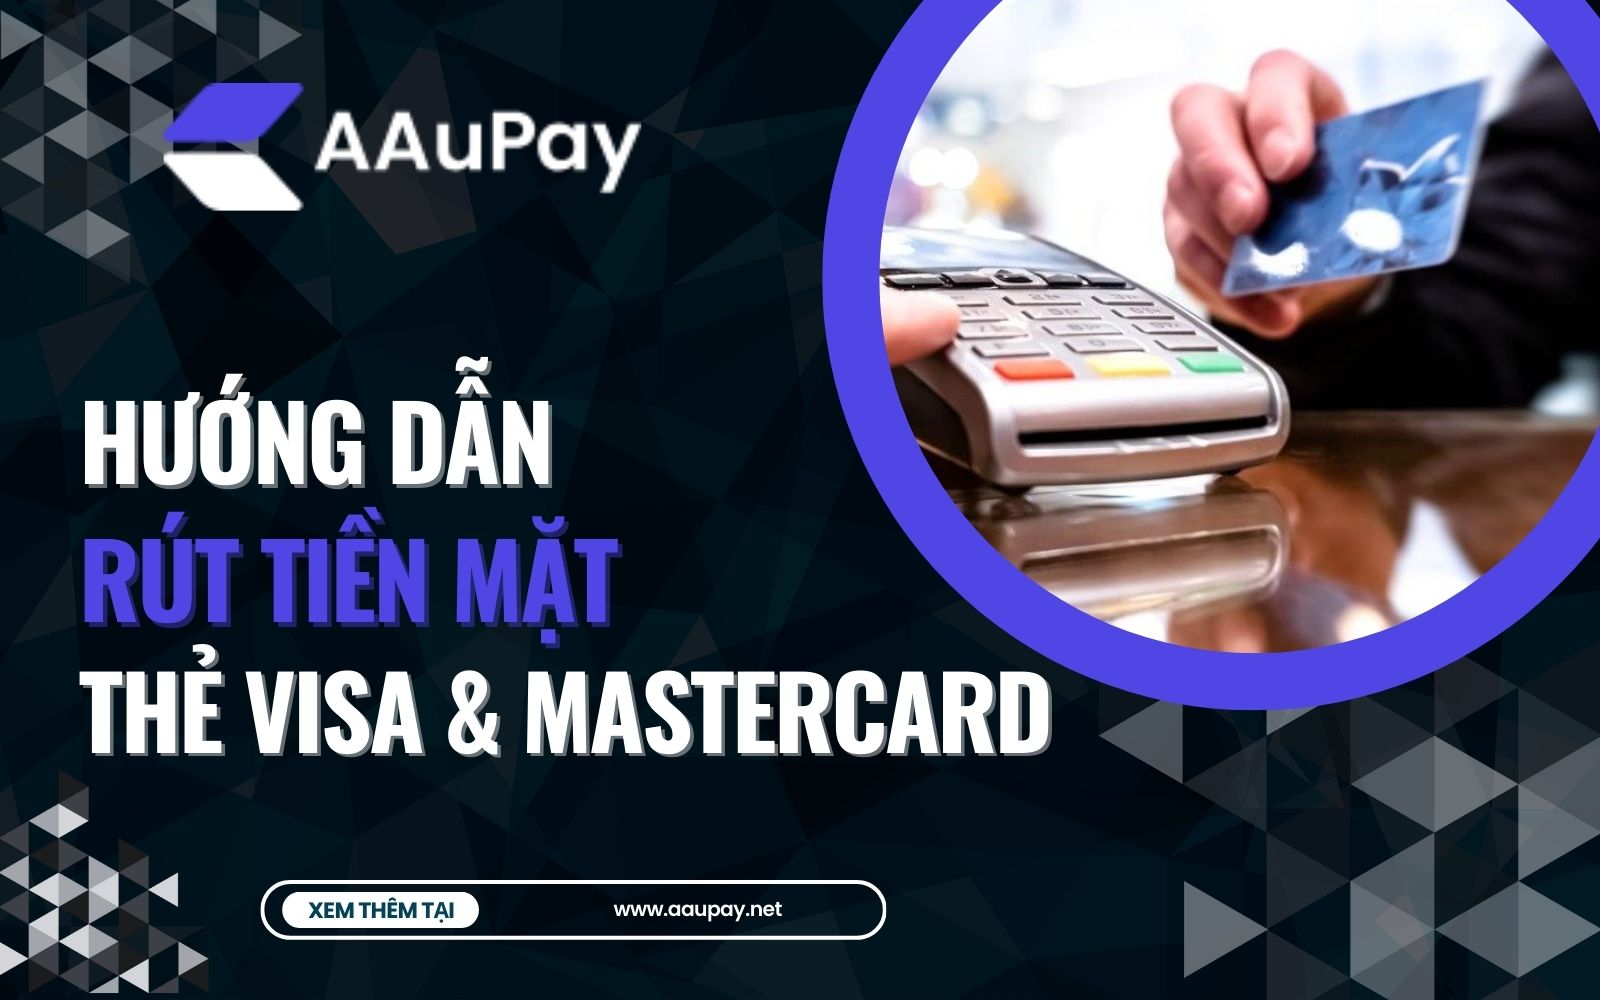 Dịch vụ Rút Tiền Mặt Từ Thẻ Visa, Thẻ Mastercard tại Aaupay.net